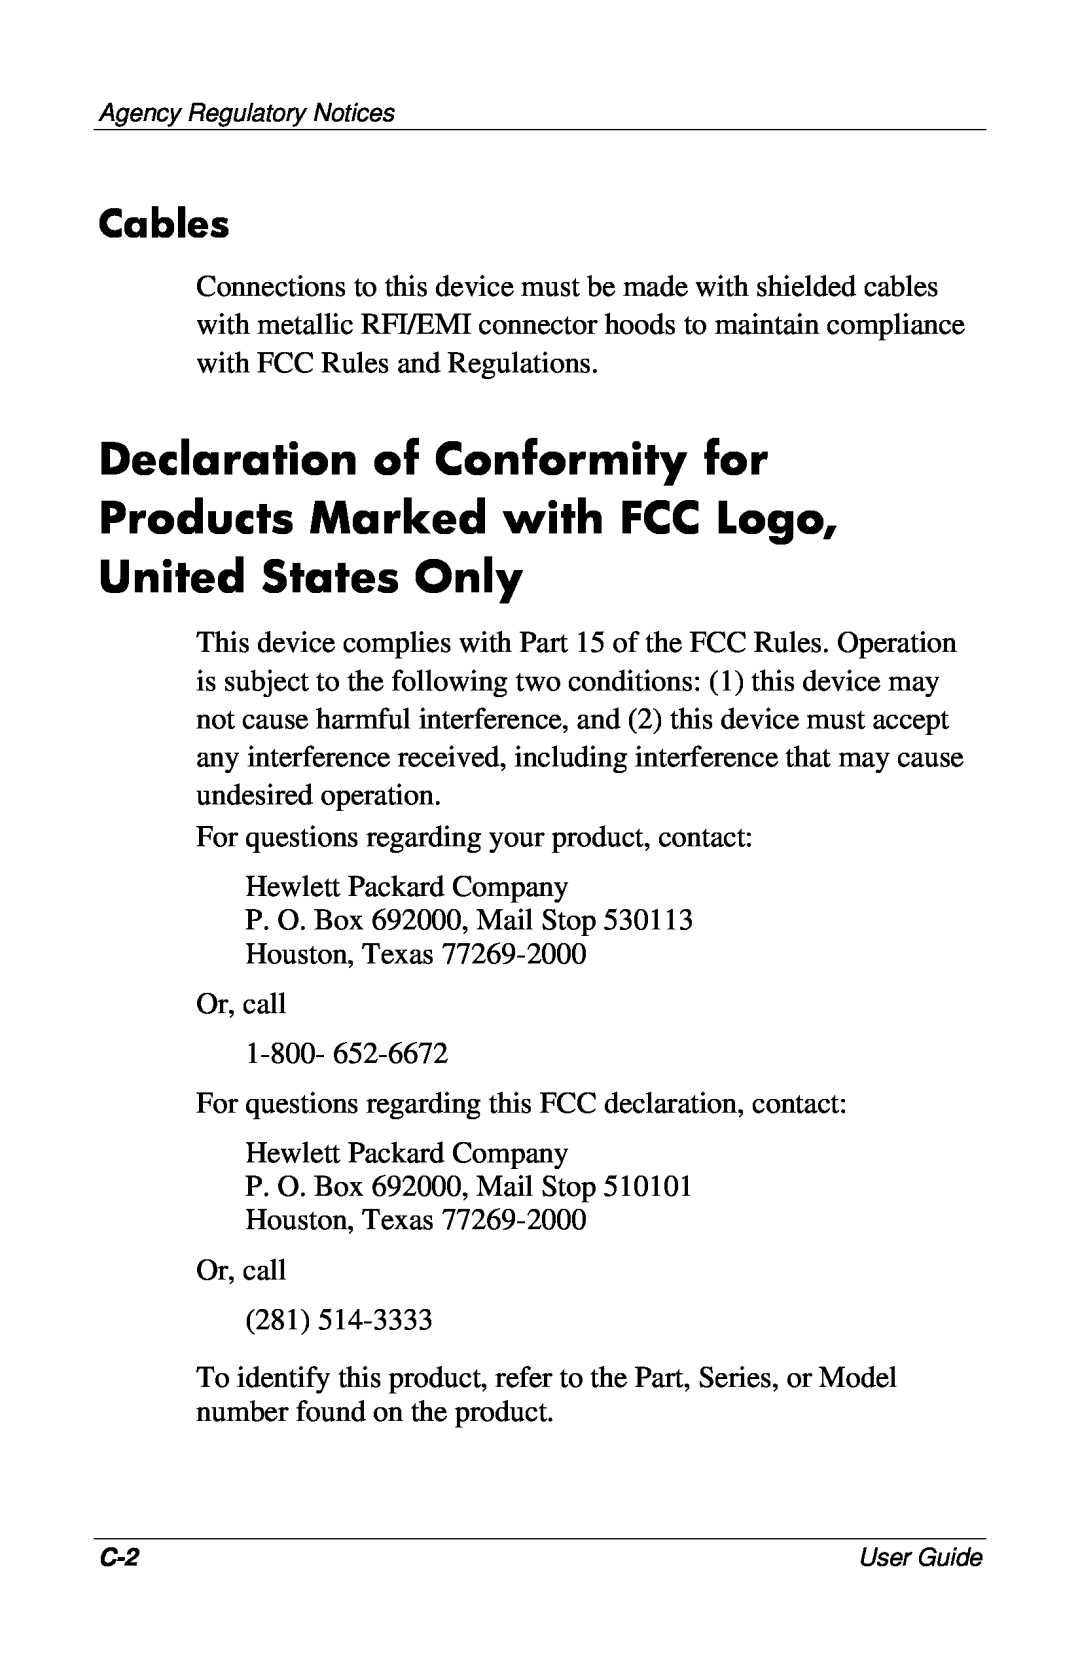 HP 7550, 7500, CRT, 9500, mx704, 5500 manual Cables 